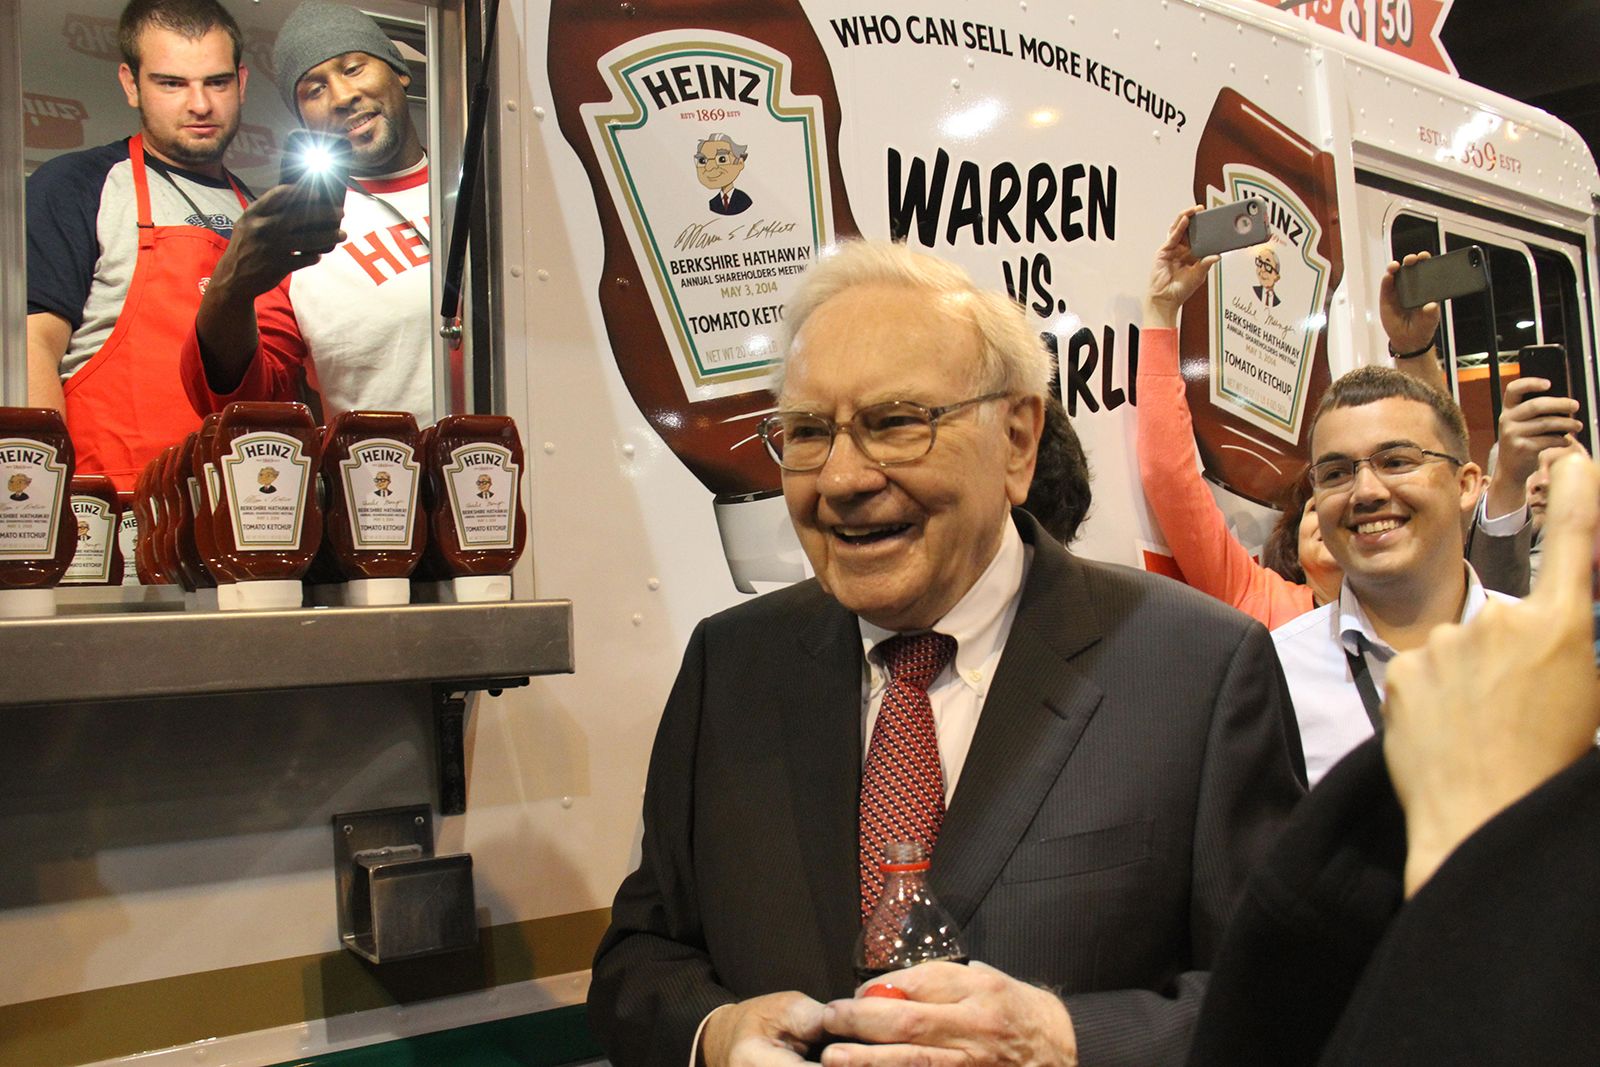 5 câu chuyện để đời của Warren Buffett về ngày sinh nhật